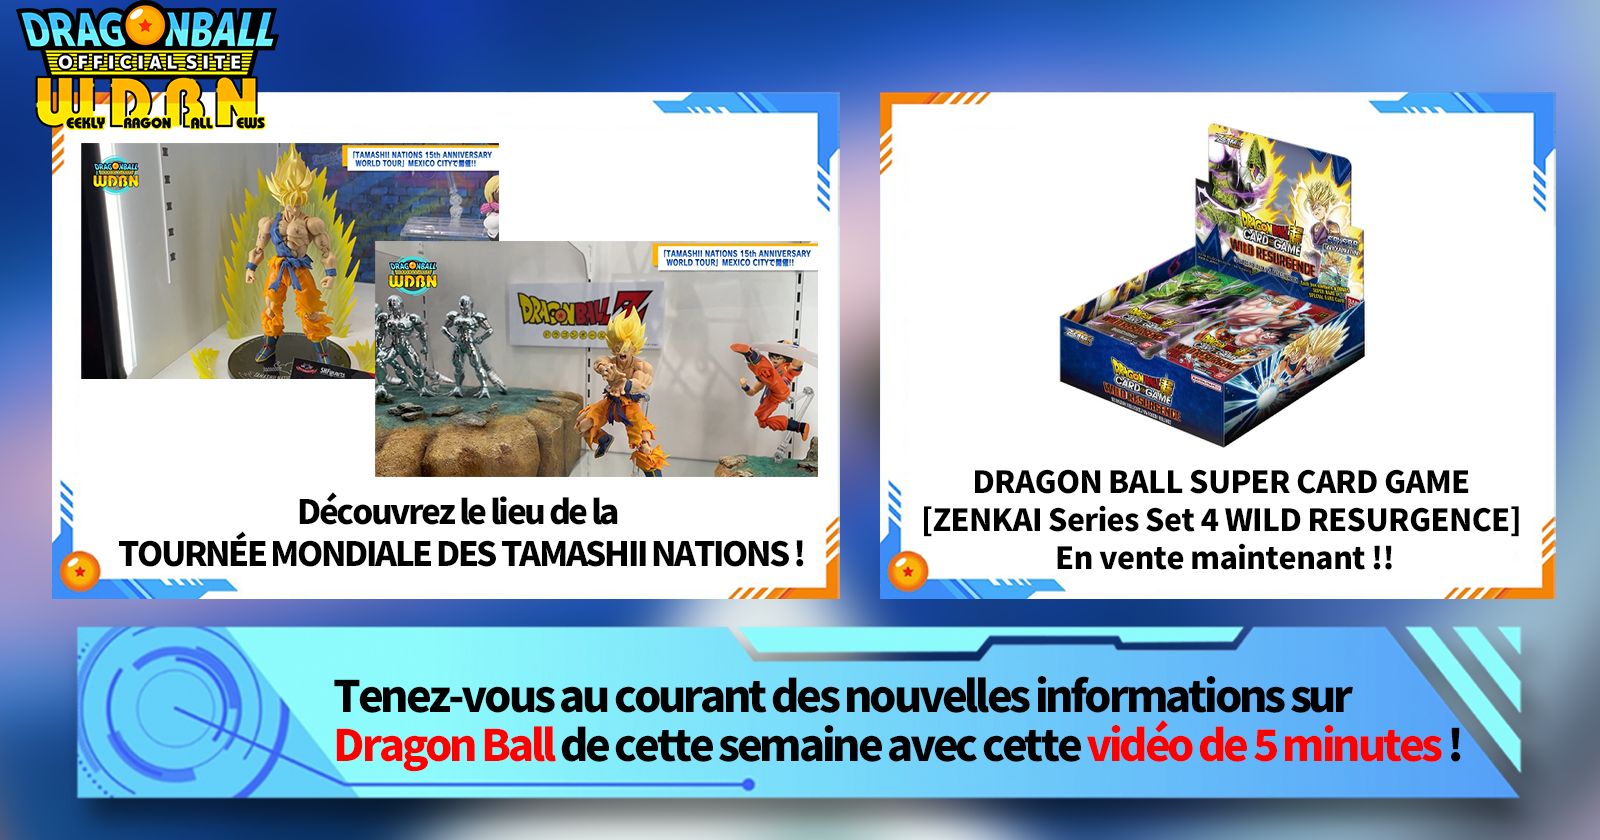 [19 juin] Diffusion Nouvelles hebdomadaires Dragon Ball !